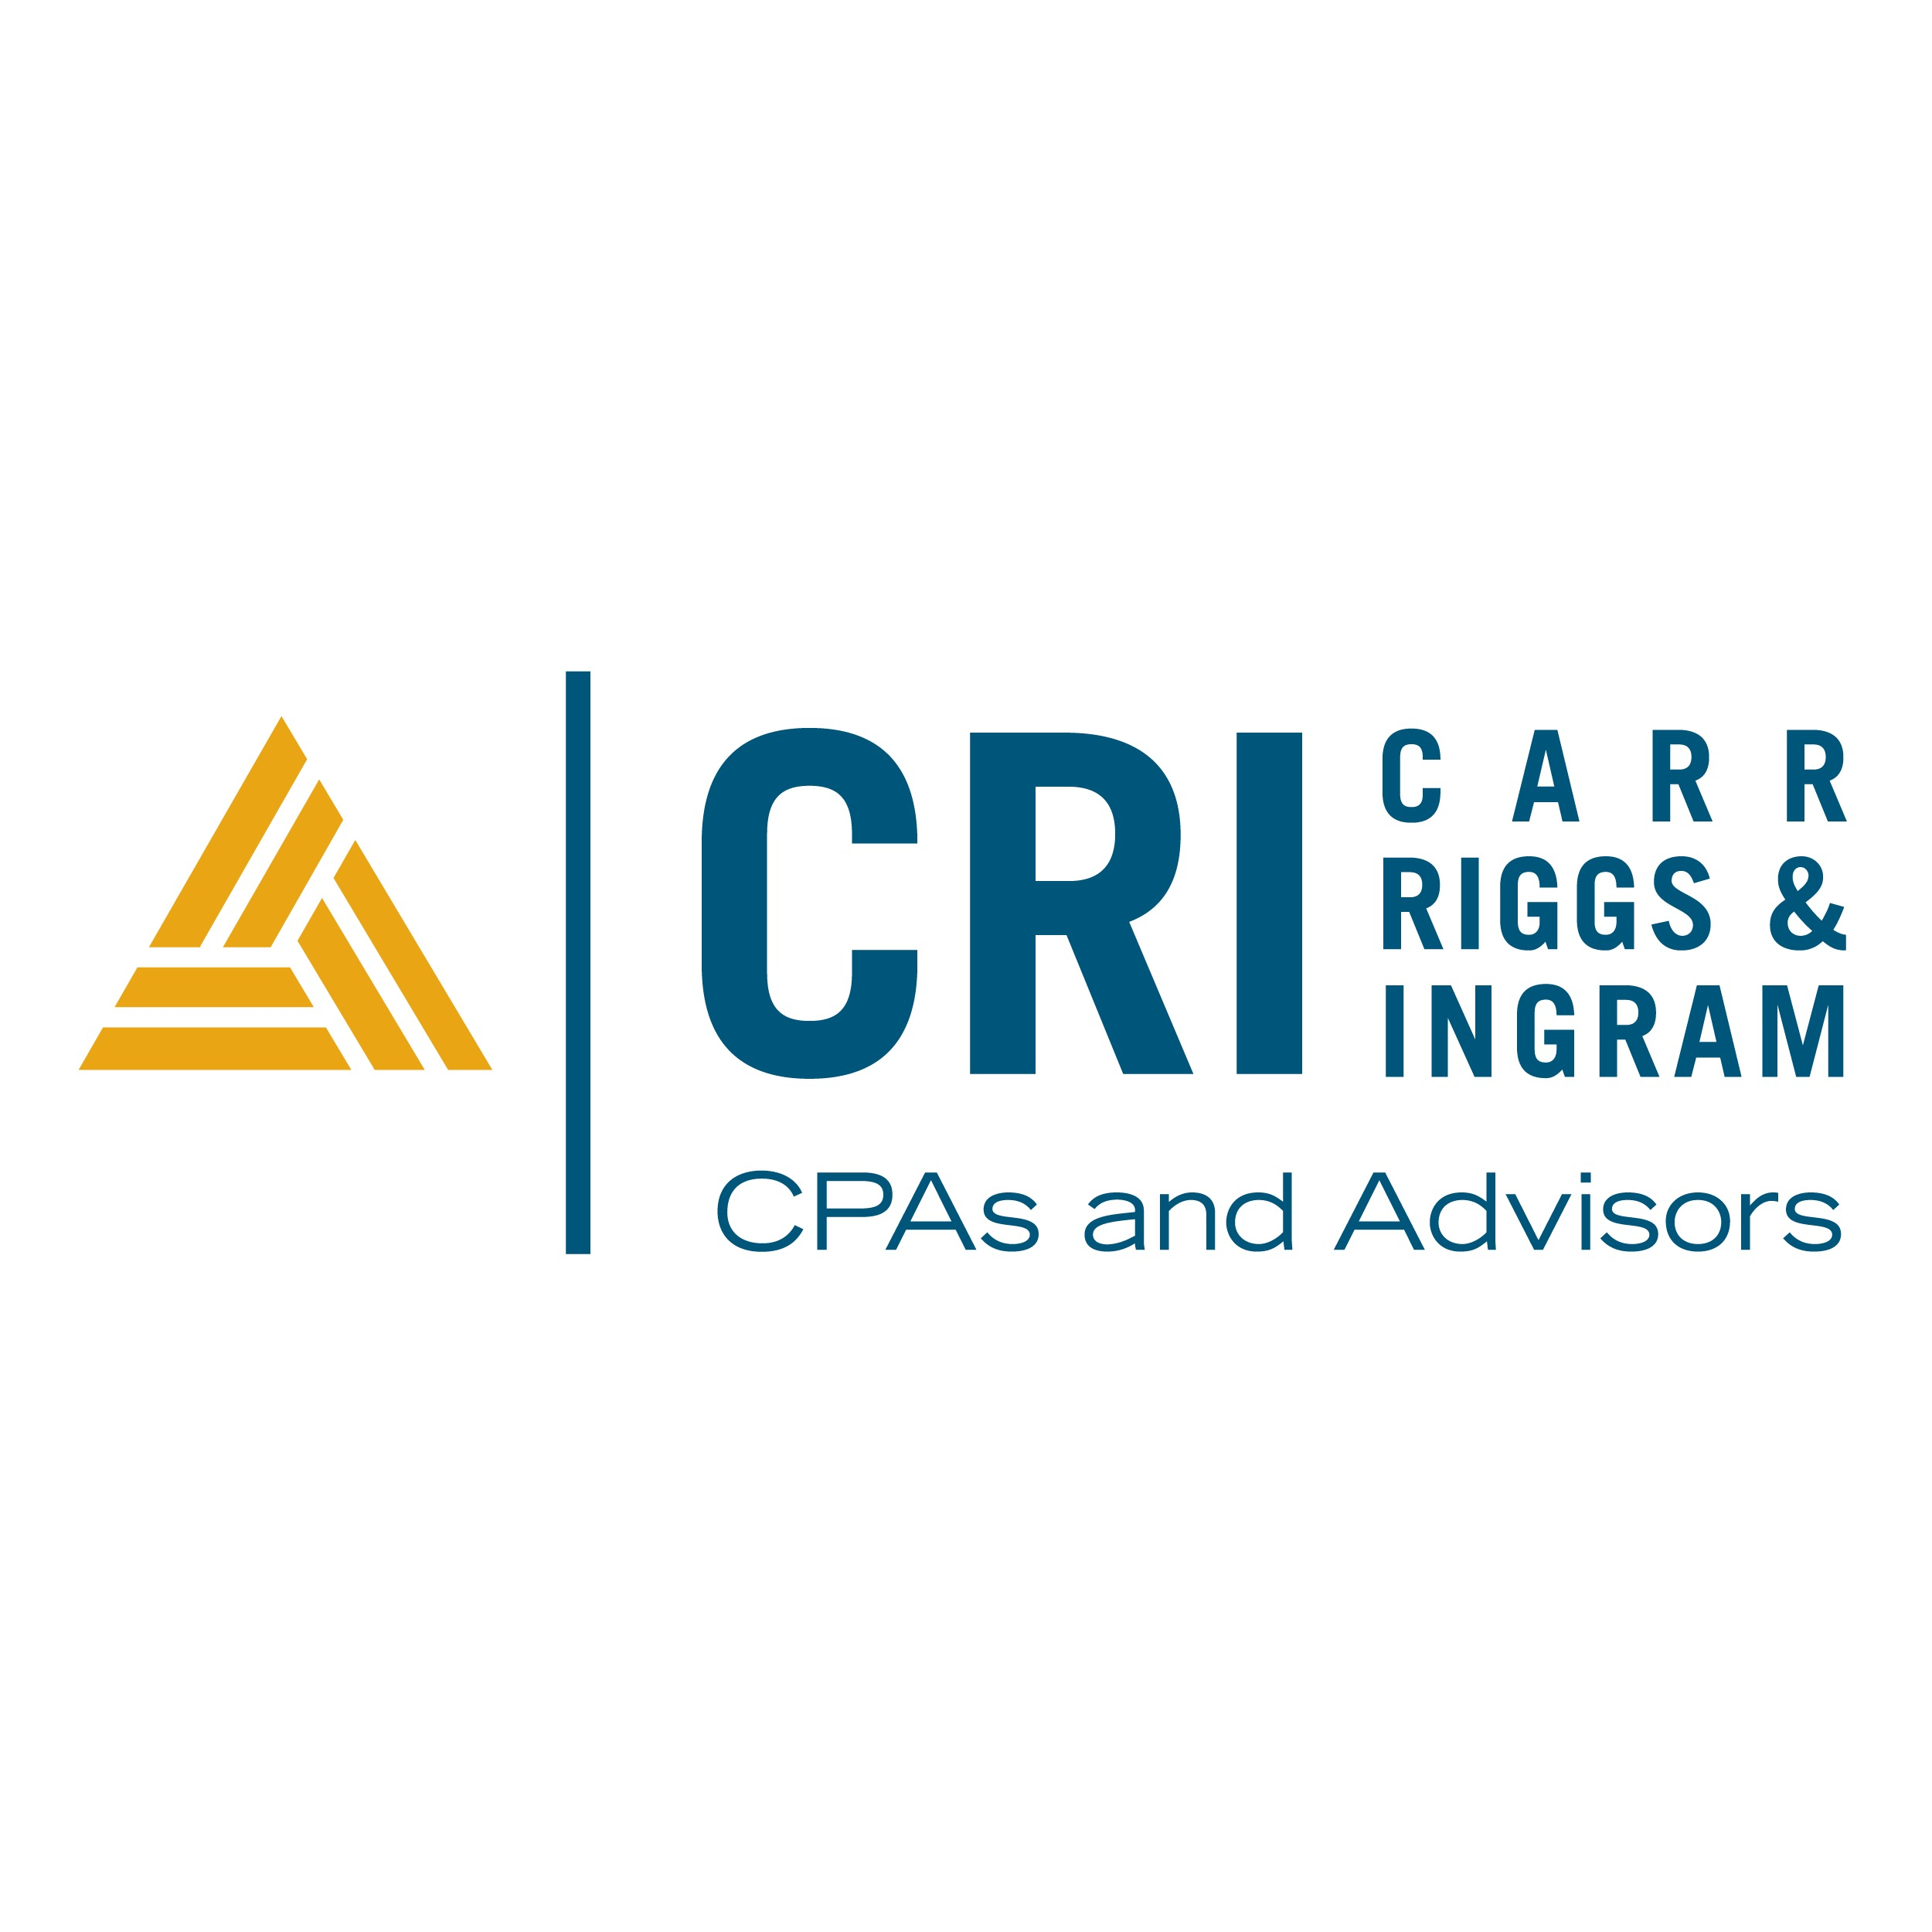 Carr, Riggs & Ingram CPAs and Advisors - Montgomery, AL 36117 - (334)271-6678 | ShowMeLocal.com